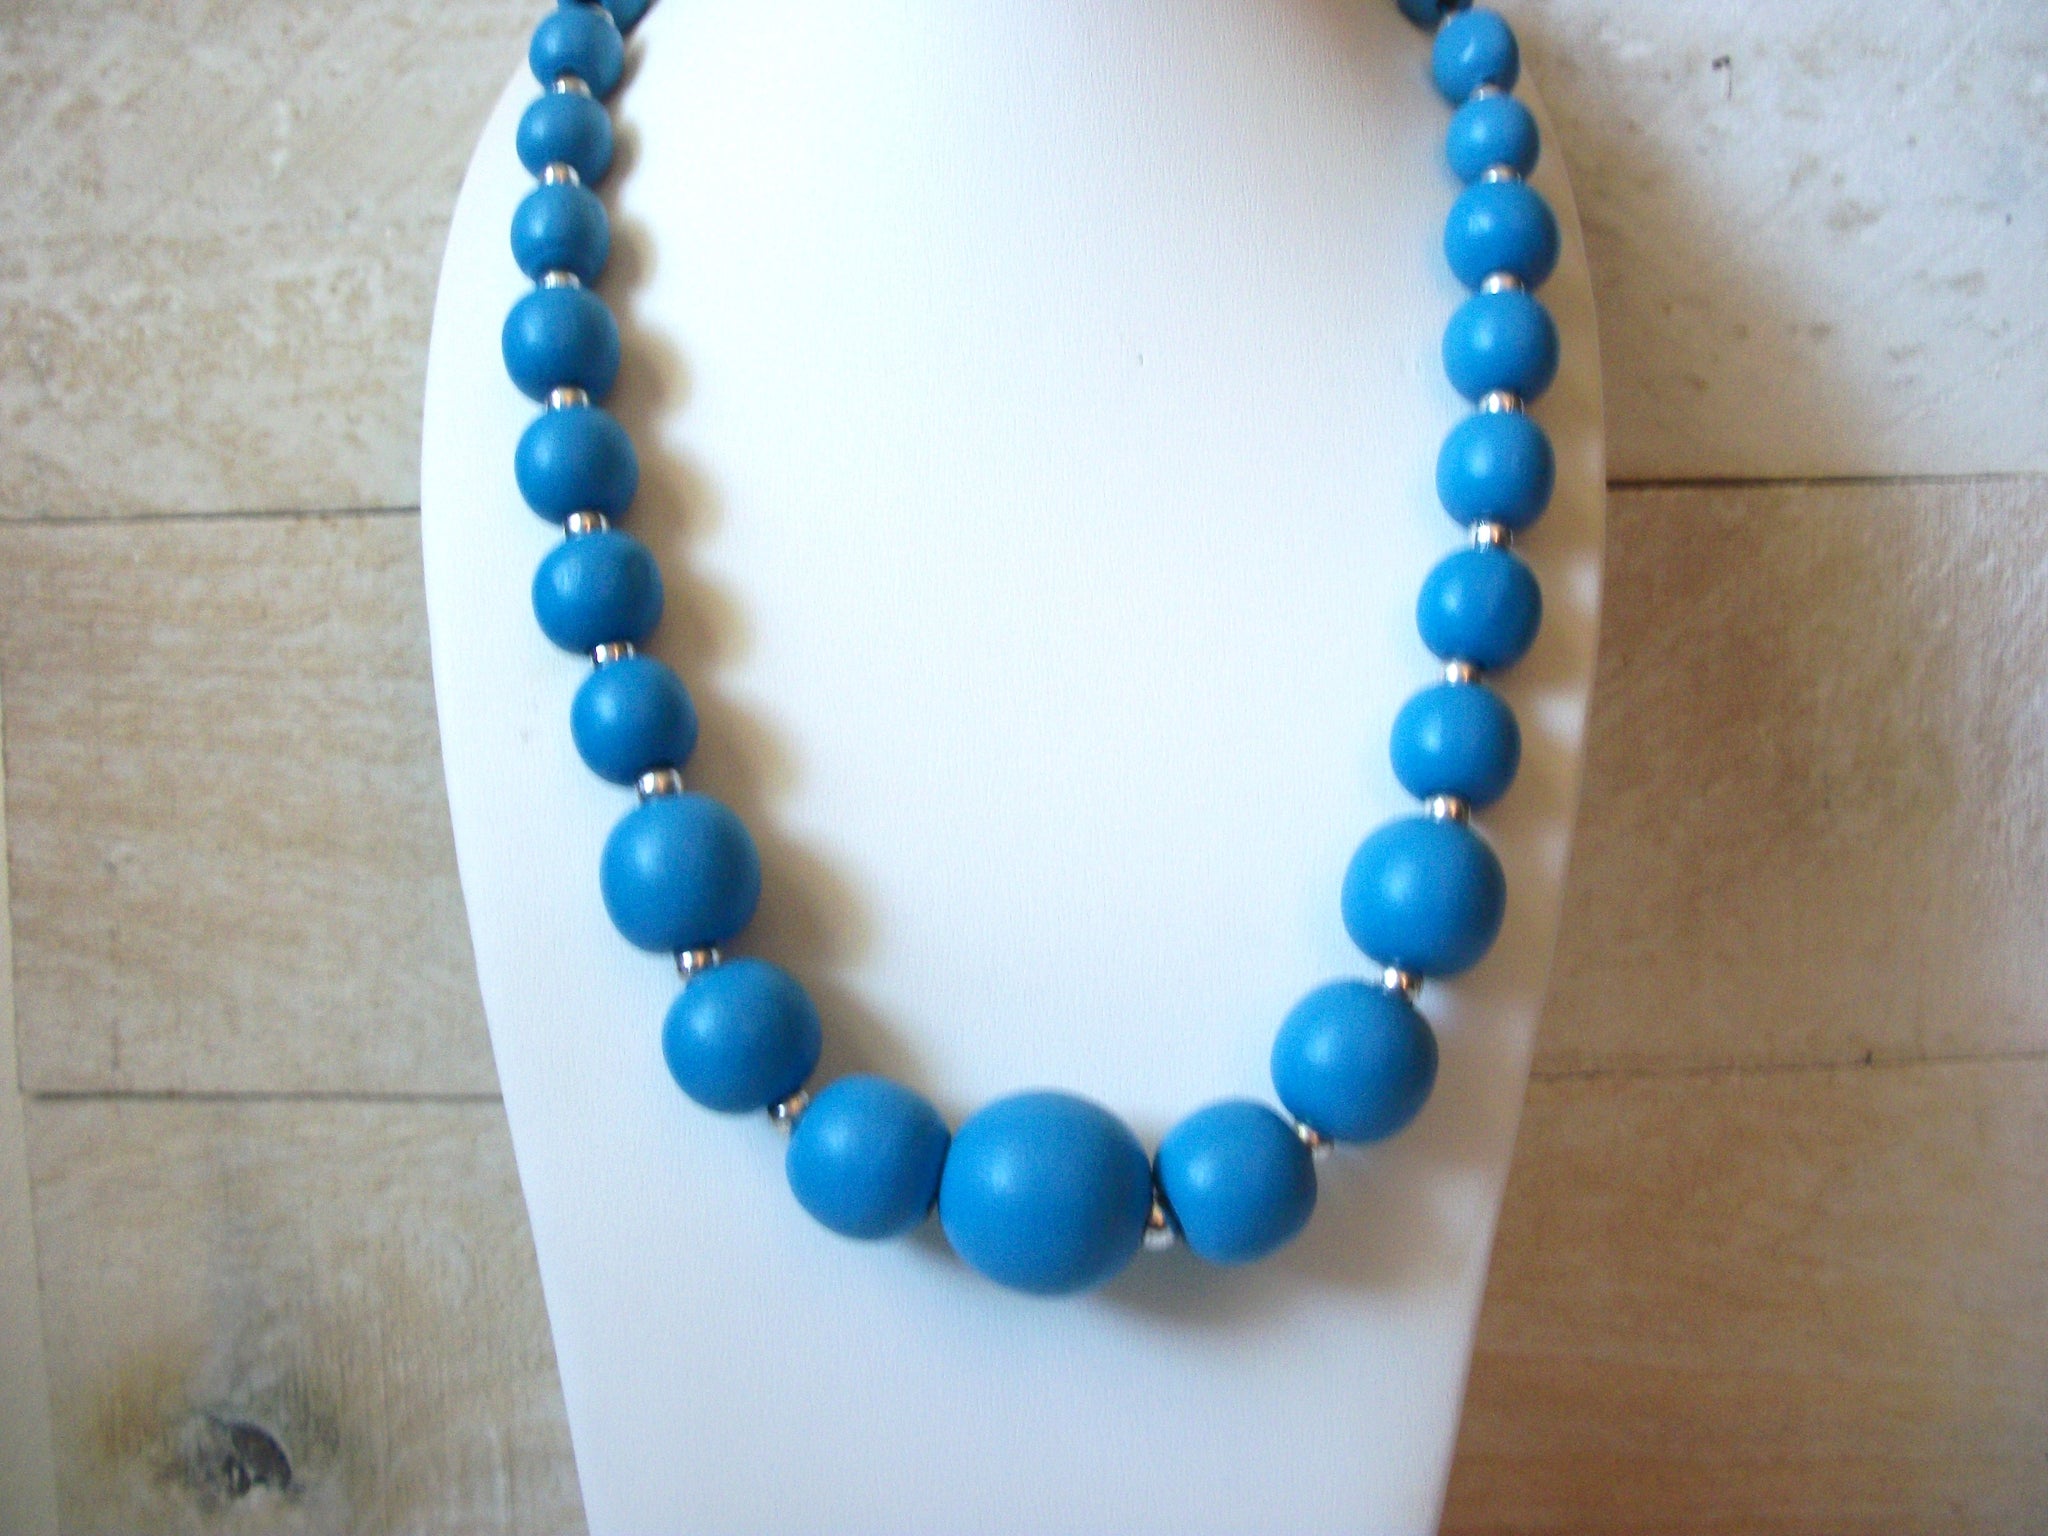 Vintage Blue Wood Necklace 50220